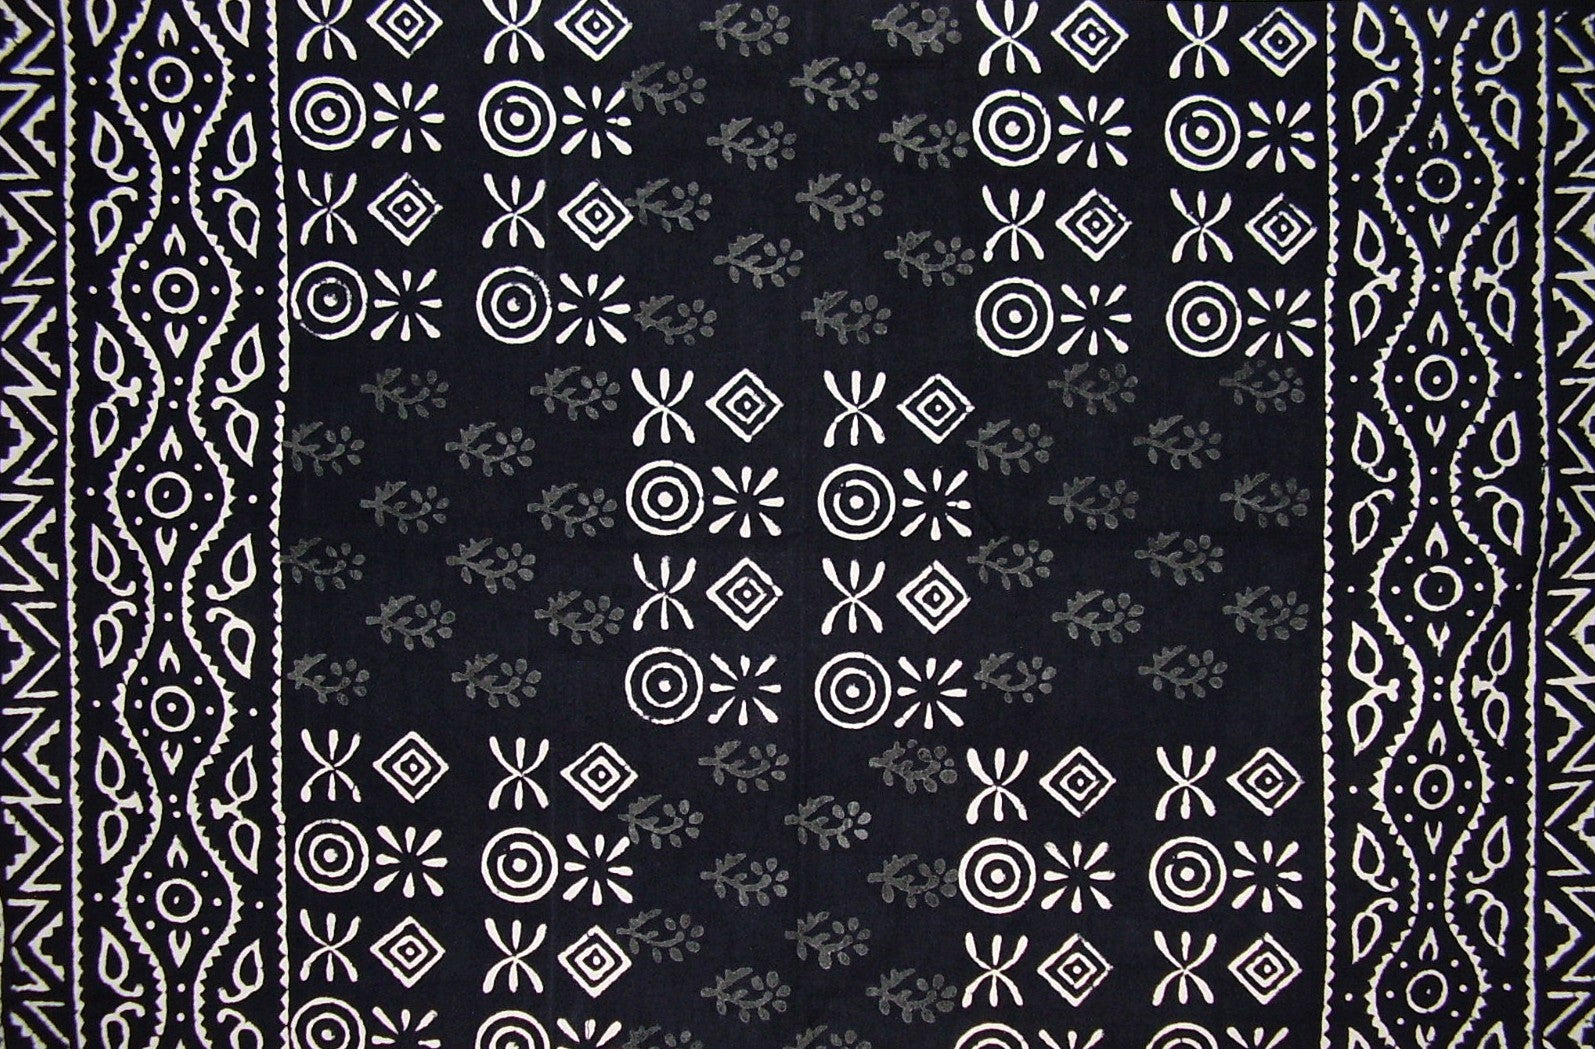 棉质枕套植物染料印花 30 英寸 x 20 英寸基本黑色 